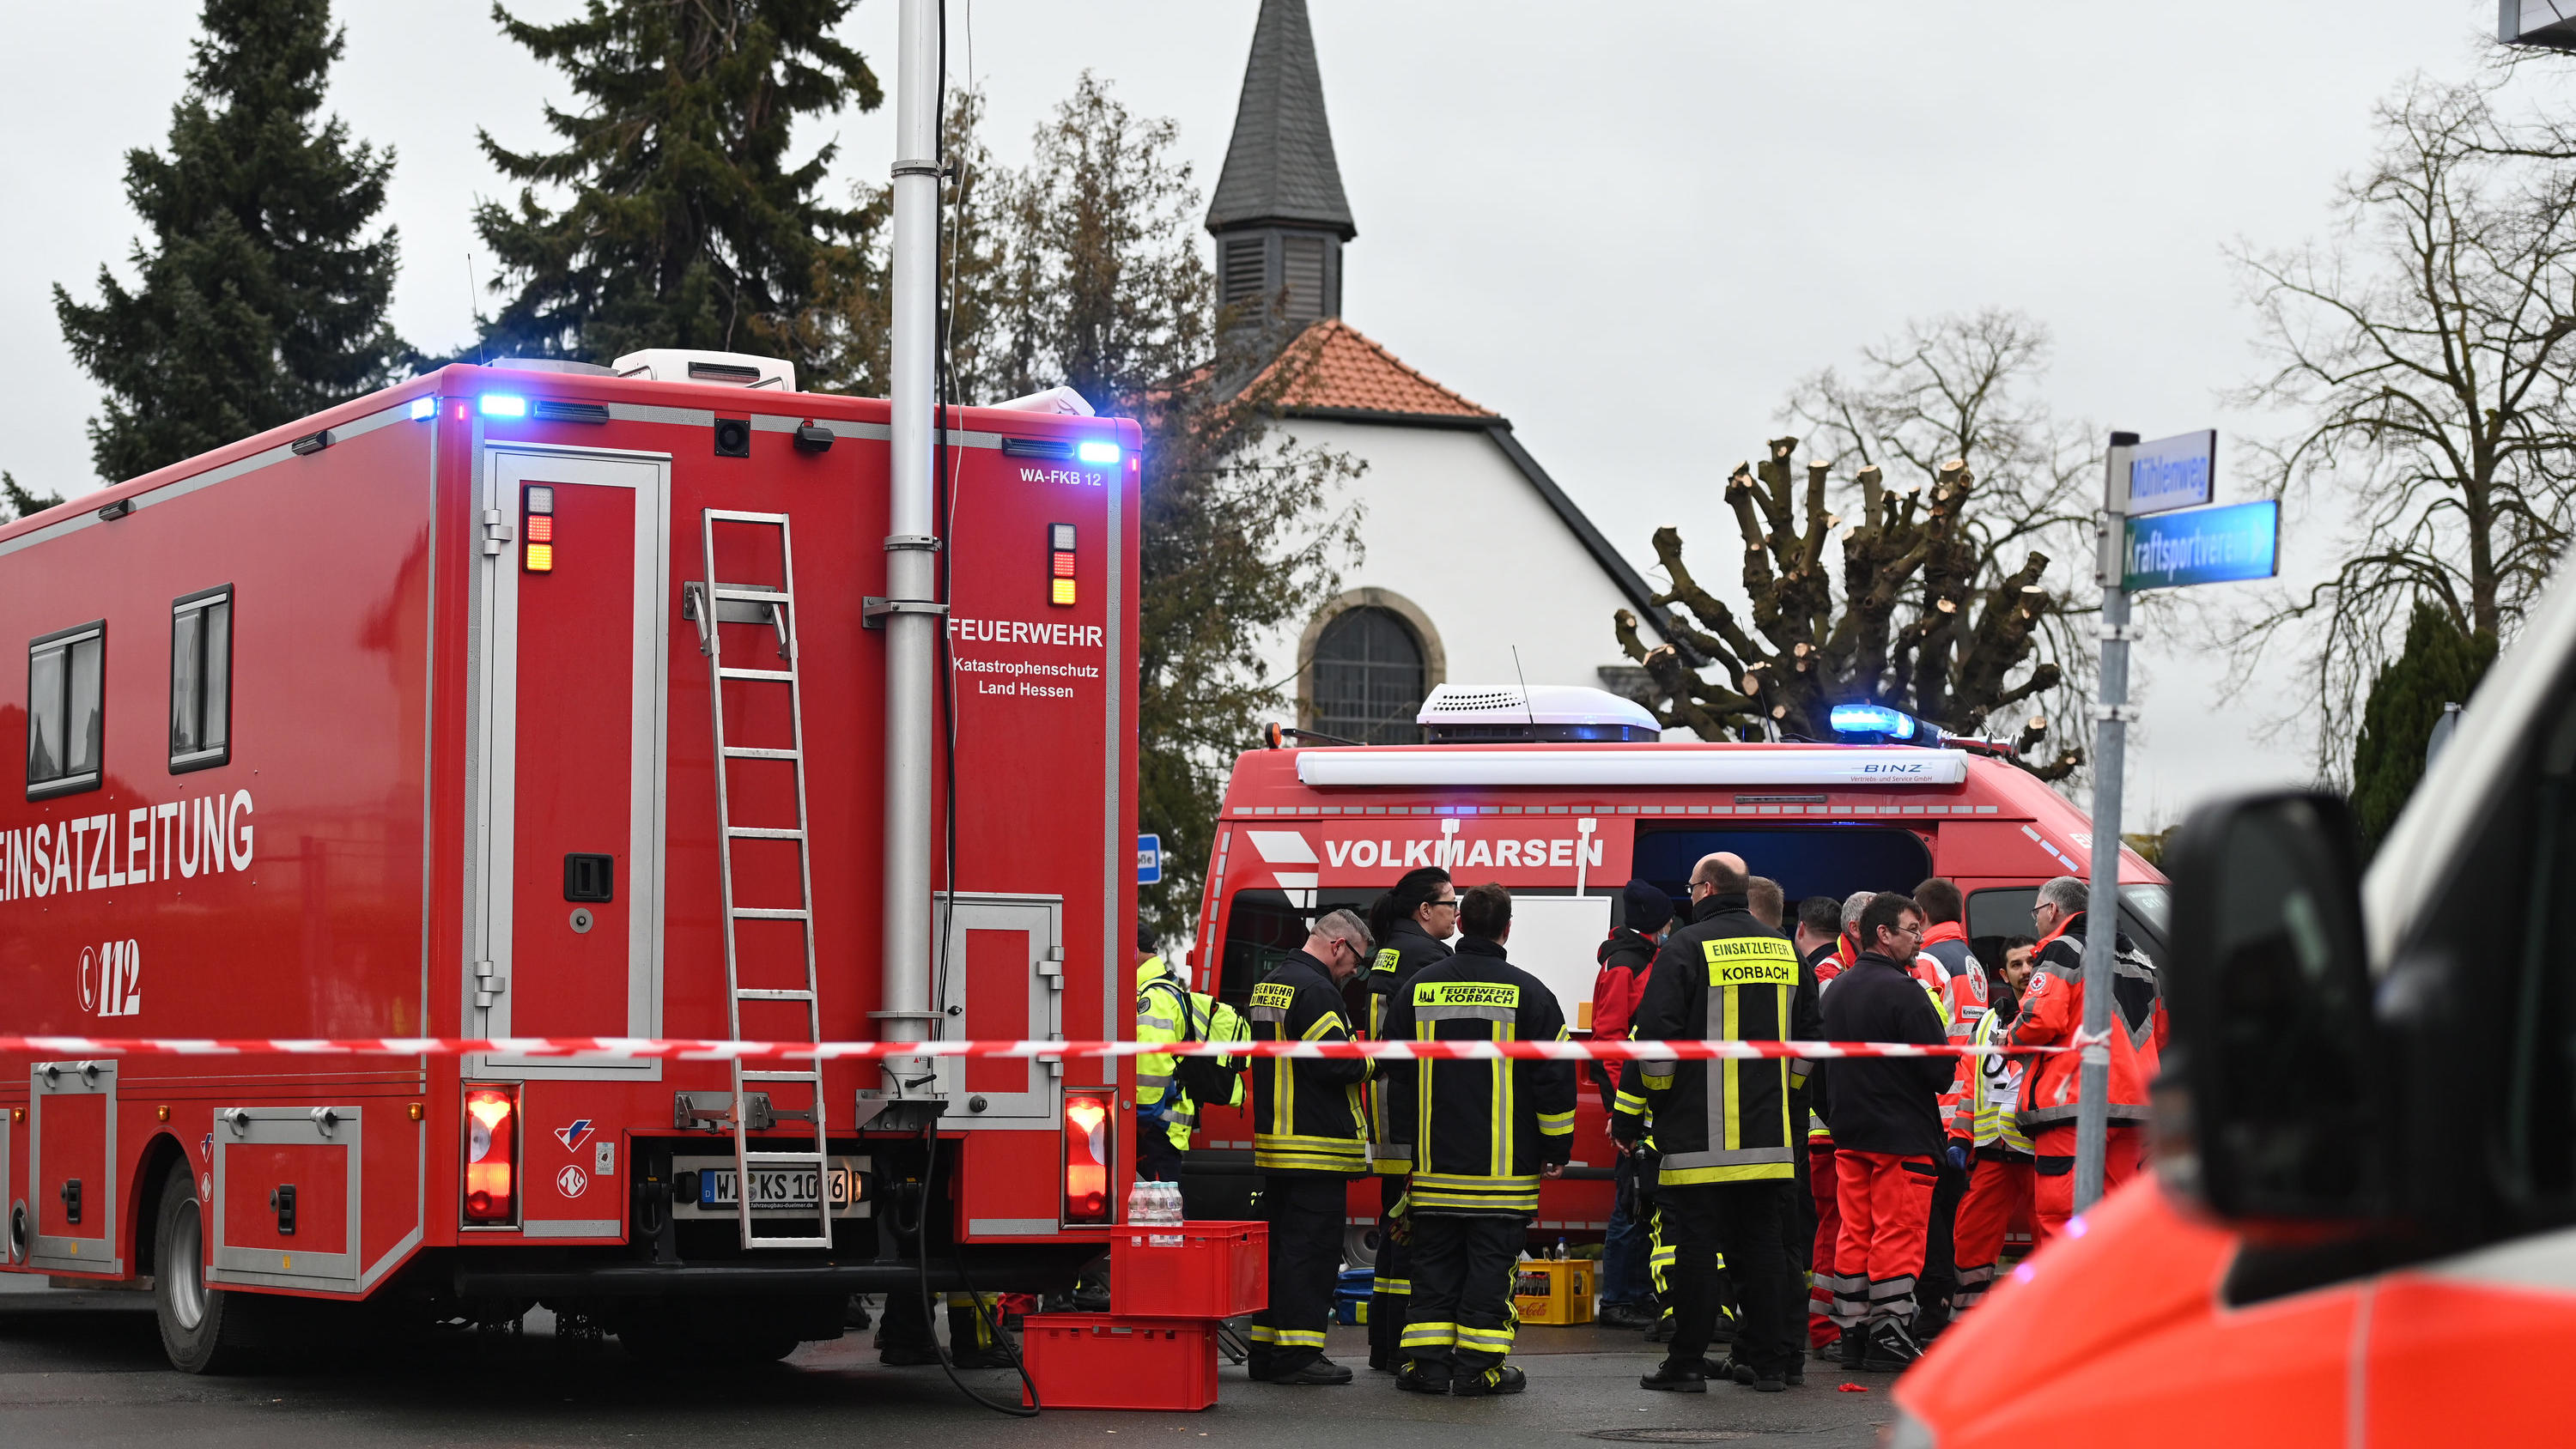 24.02.2020, Hessen, Volkmarsen: Feuerwehrleute und Notfallsanitäter stehen  hinter einem Absperrband an der Stelle, an der ein Auto in einen Rosenmontagsumzug gefahren ist. Dabei gab es mehrere Verletzte. Die Polizei hat nach eigenen Angaben noch kei